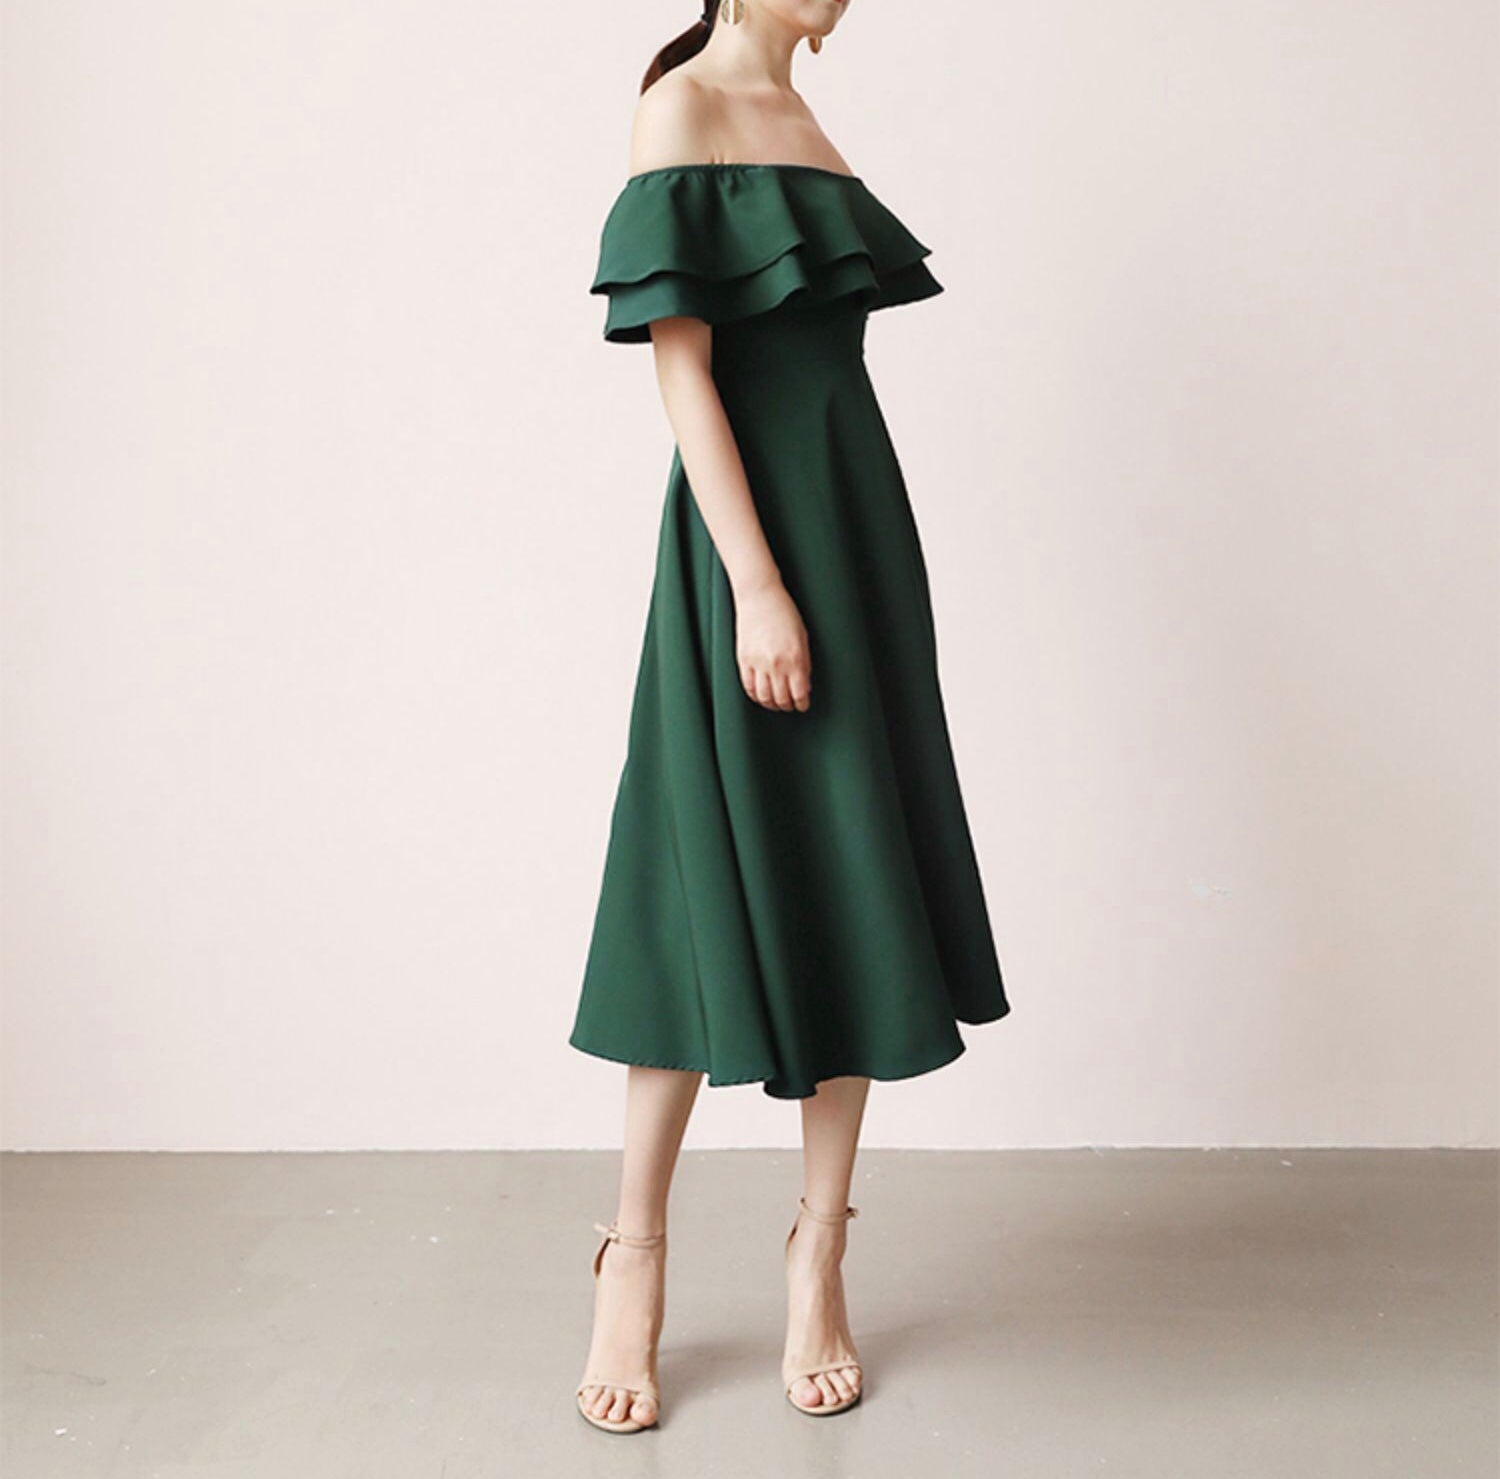 2-layer Off Shoulder Elegant Dress